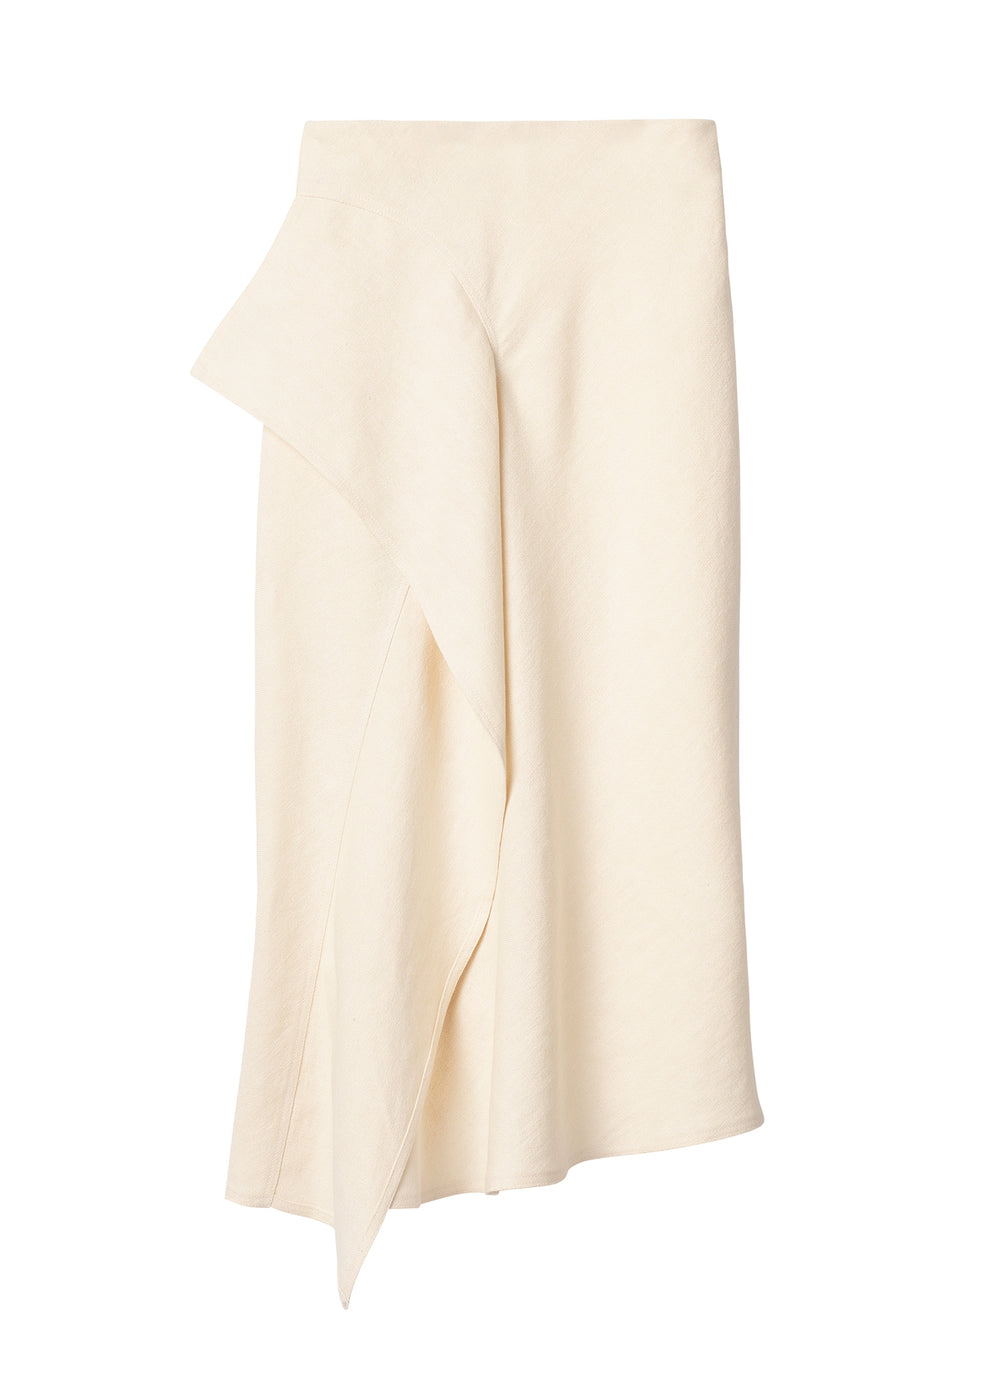 flatlay of cream linen midi skirt